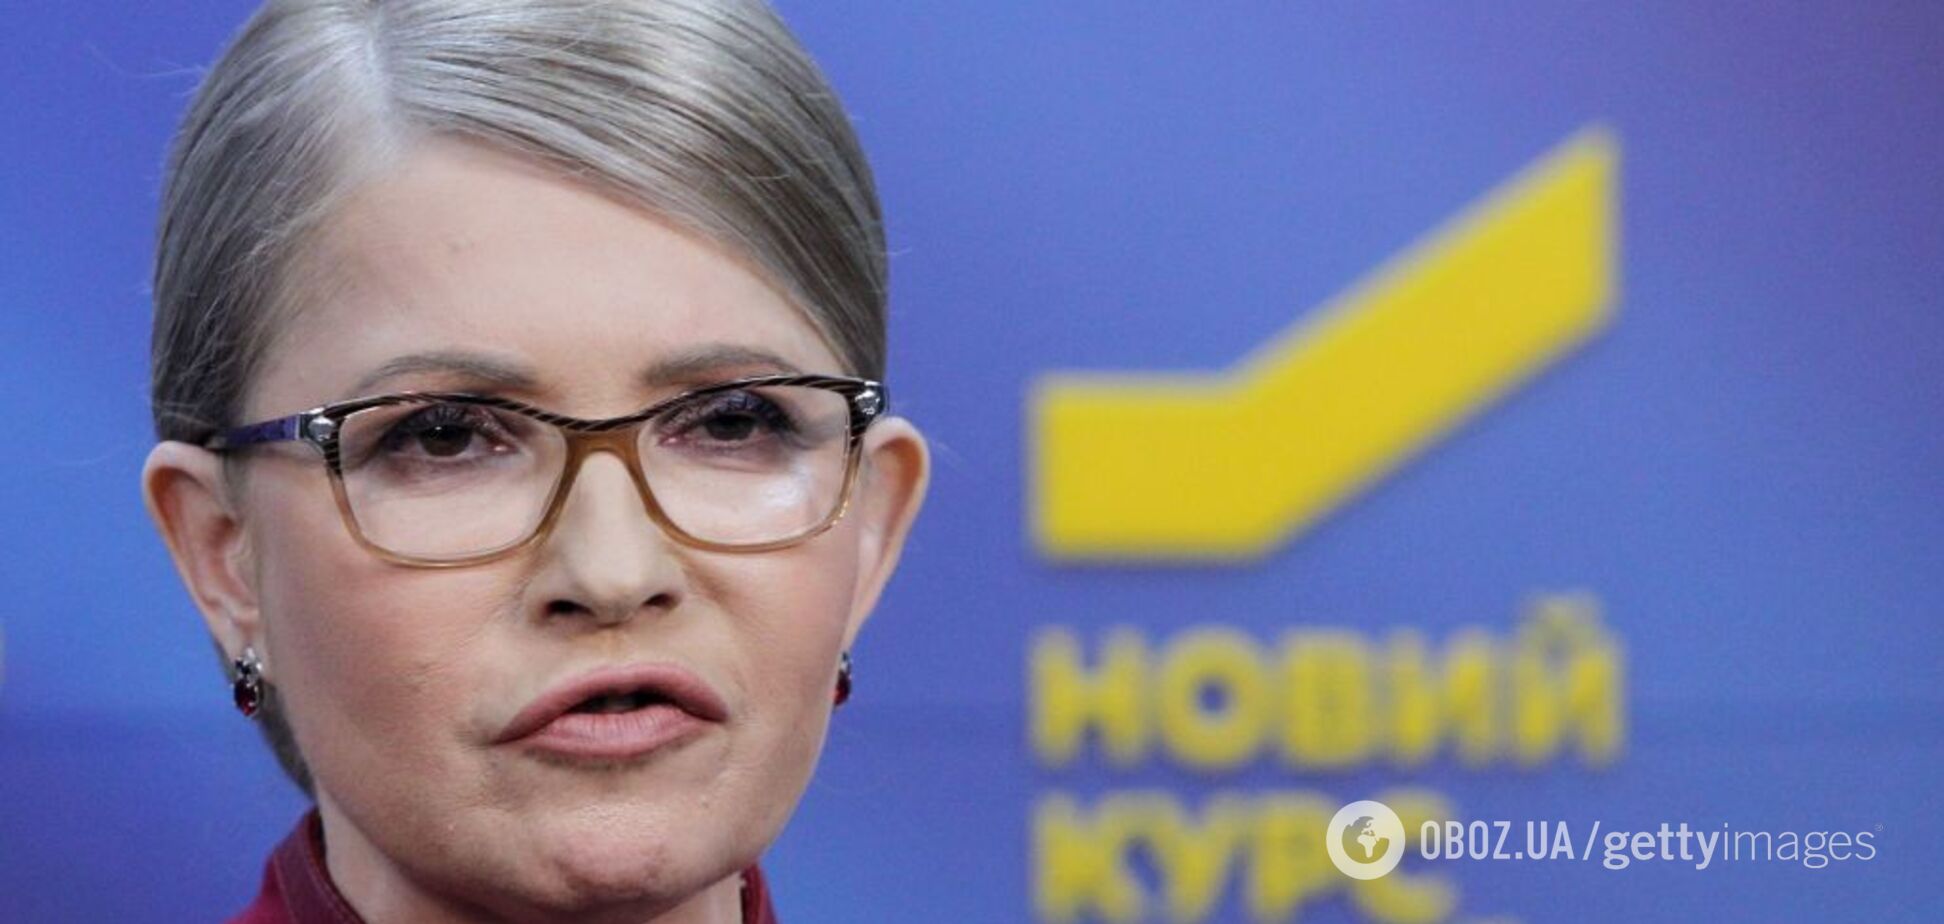 Коса повернулася: Тимошенко з'явилася на публіці з відомою зачіскою. Фото